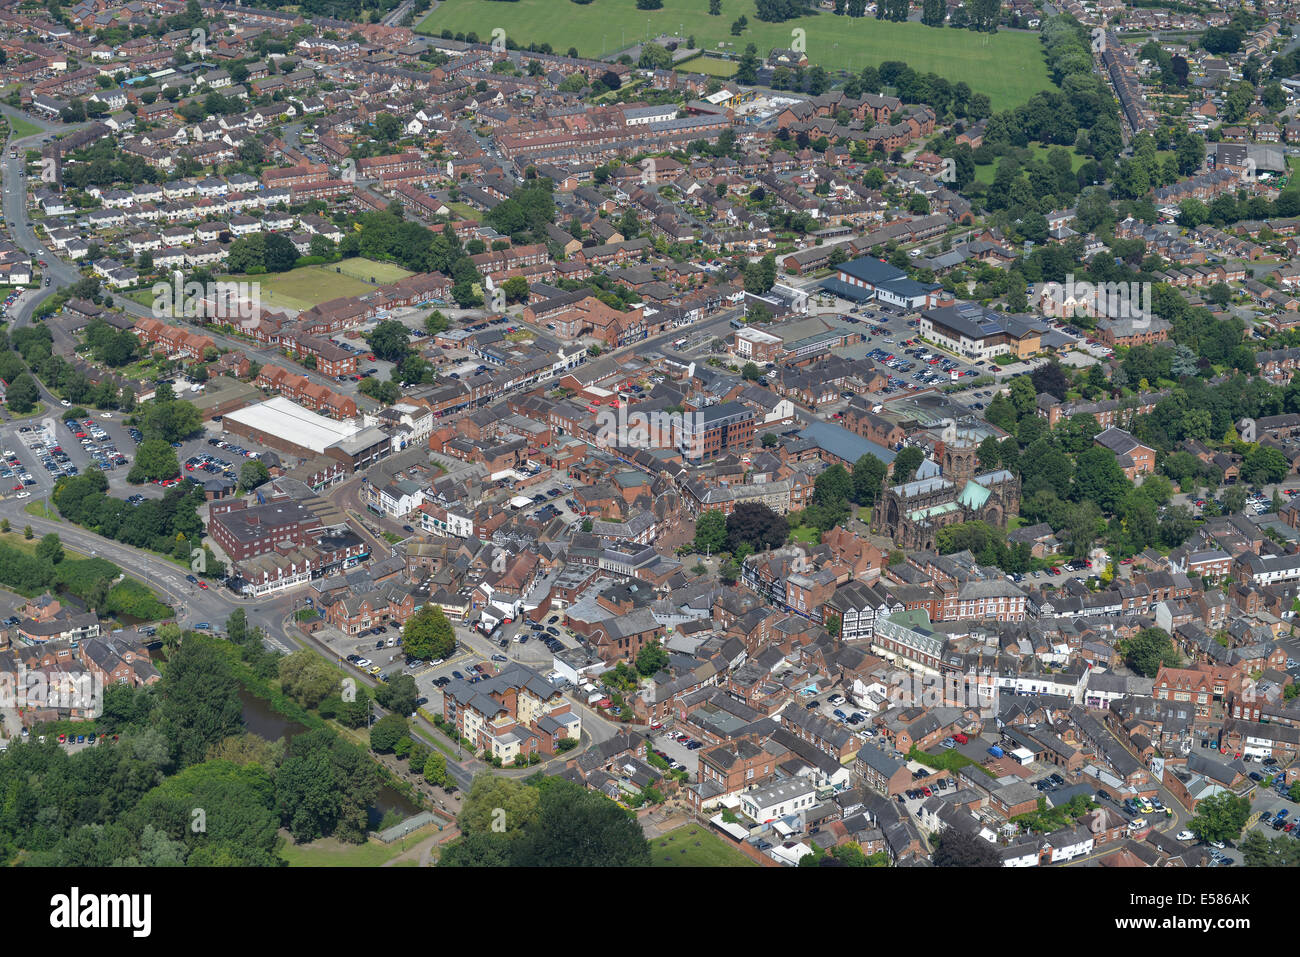 Un'immagine aerea che mostra il centro di Nantwich nel Cheshire, Regno Unito Foto Stock